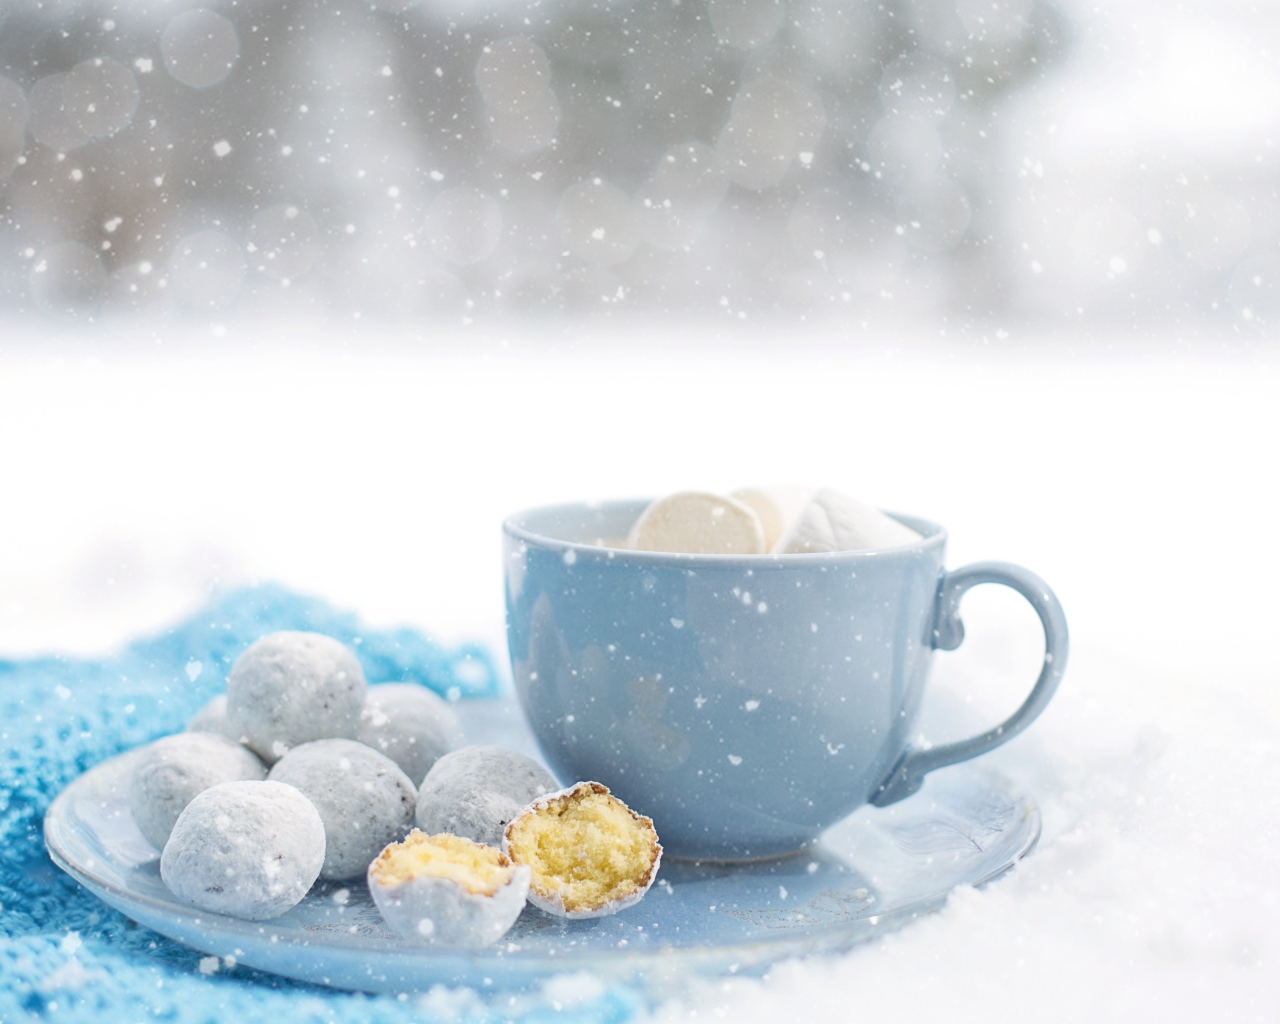 Чашка кофе с маршмеллоу на тарелке с пряниками зимой